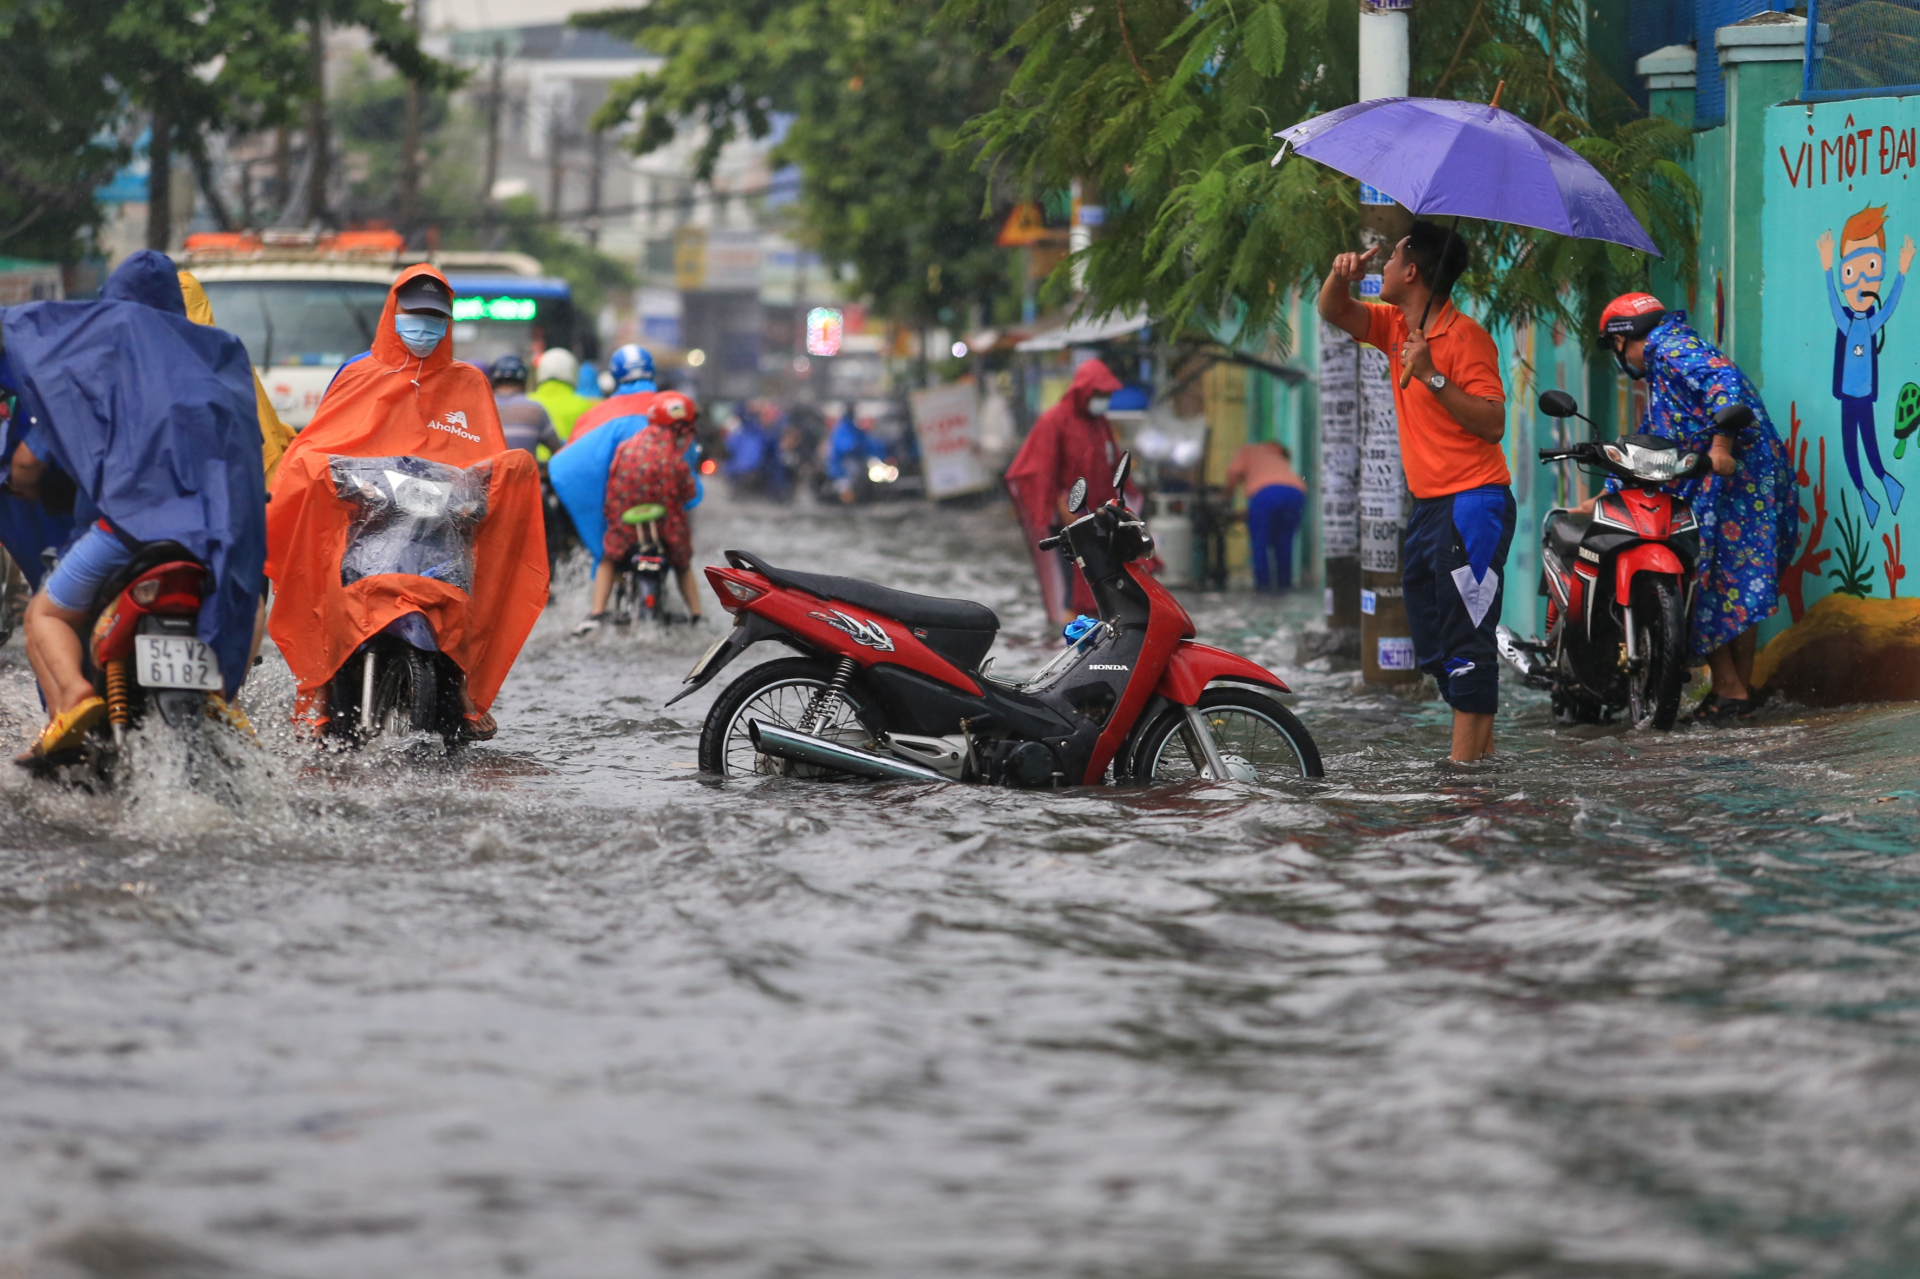 Sài Gòn vào mùa mưa, dân công sở nên làm gì để giờ tan tầm không phải chật vật về nhà? - ảnh 3